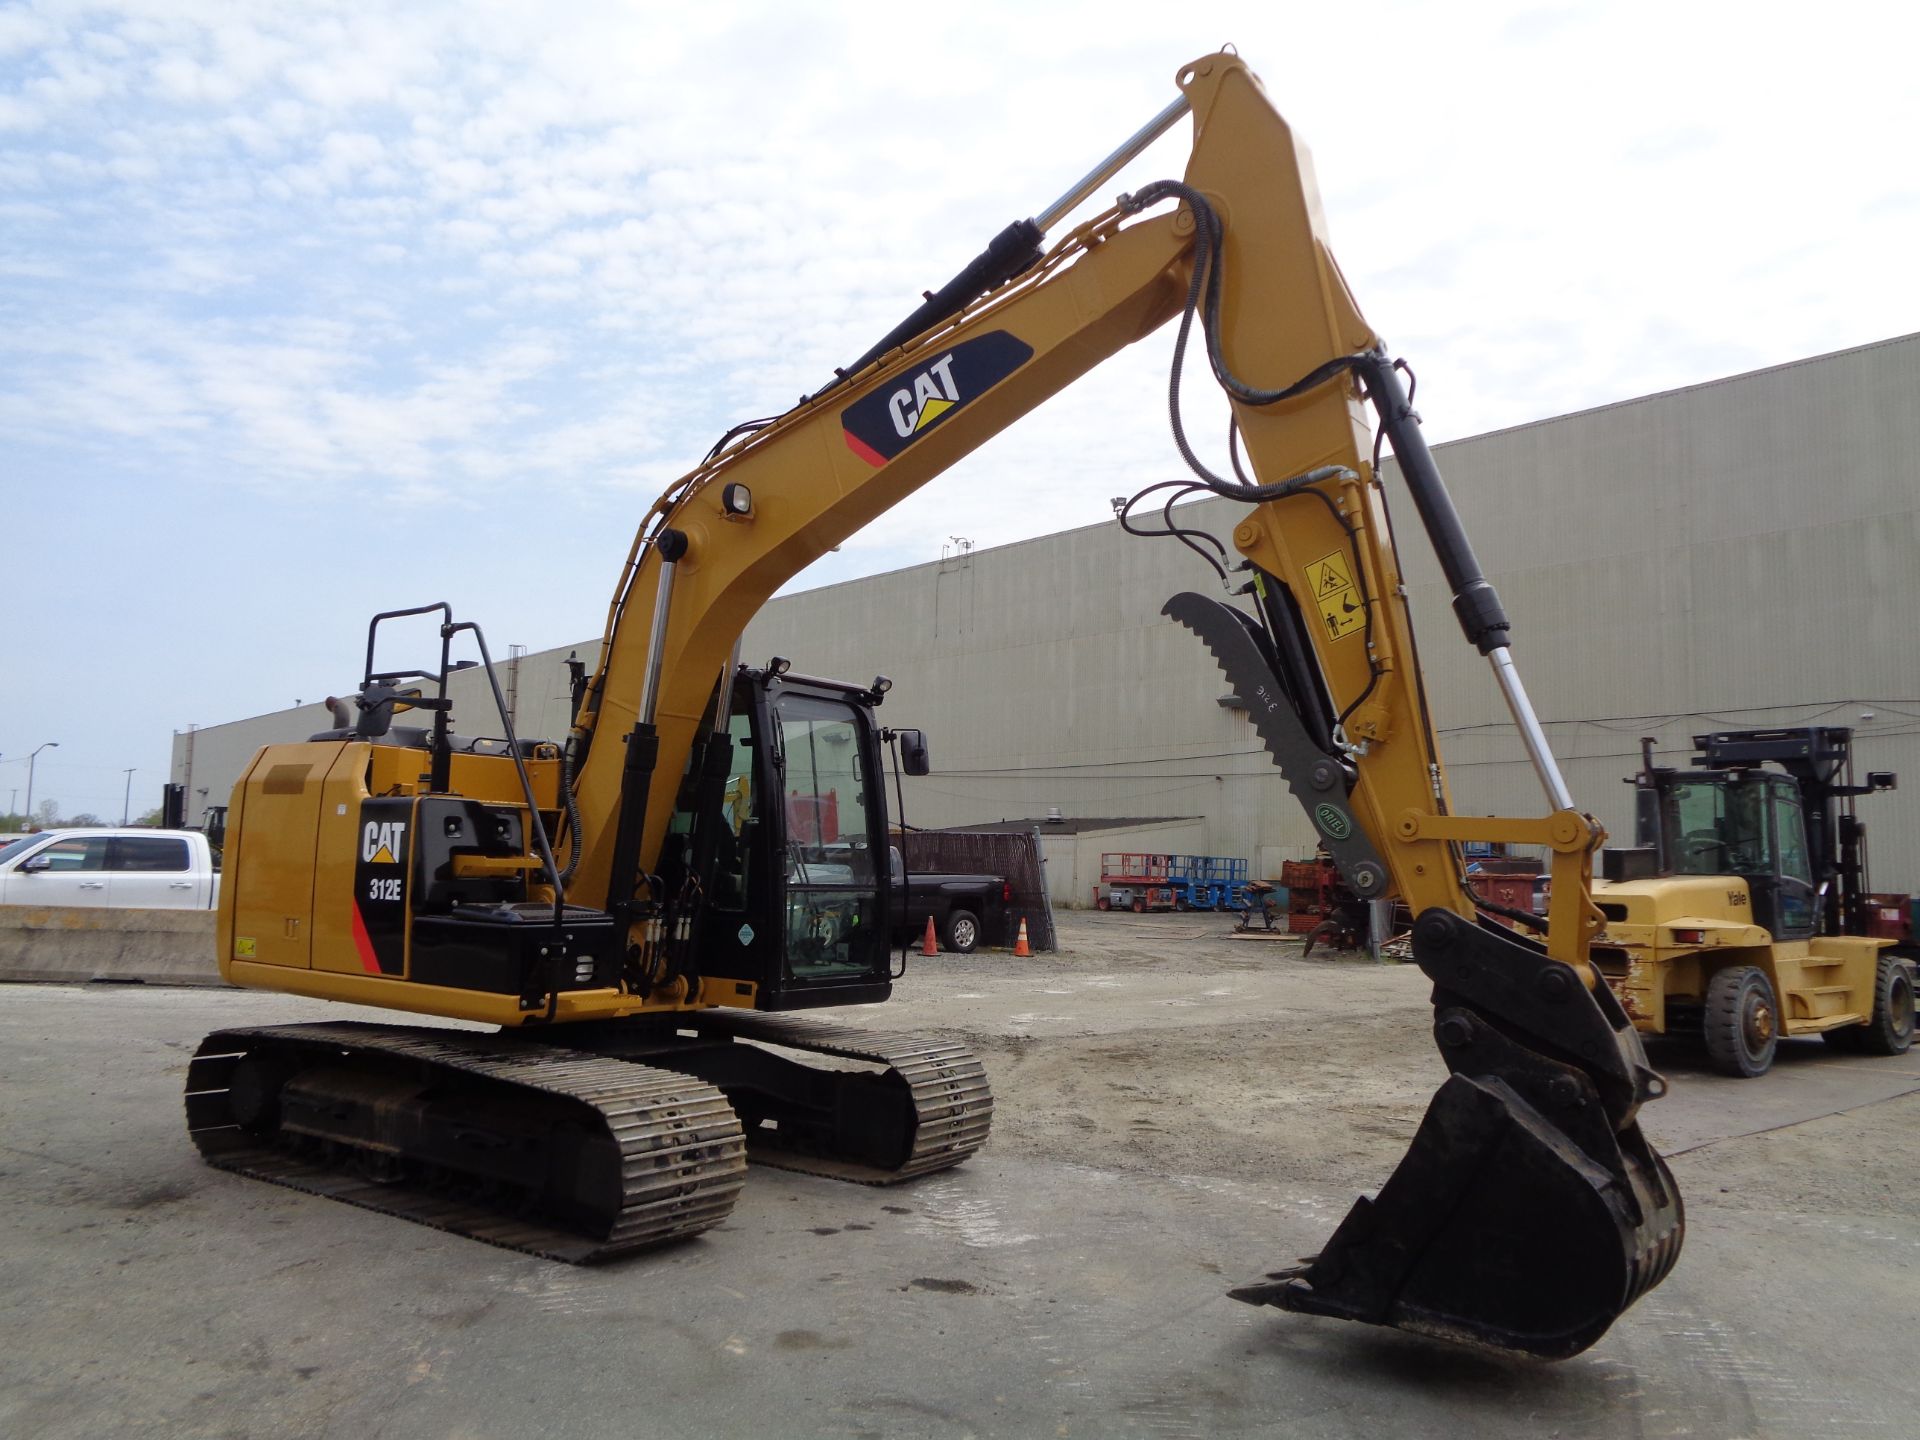 2015 CAT 312 Hydraulic Crawler Excavator - Image 4 of 15